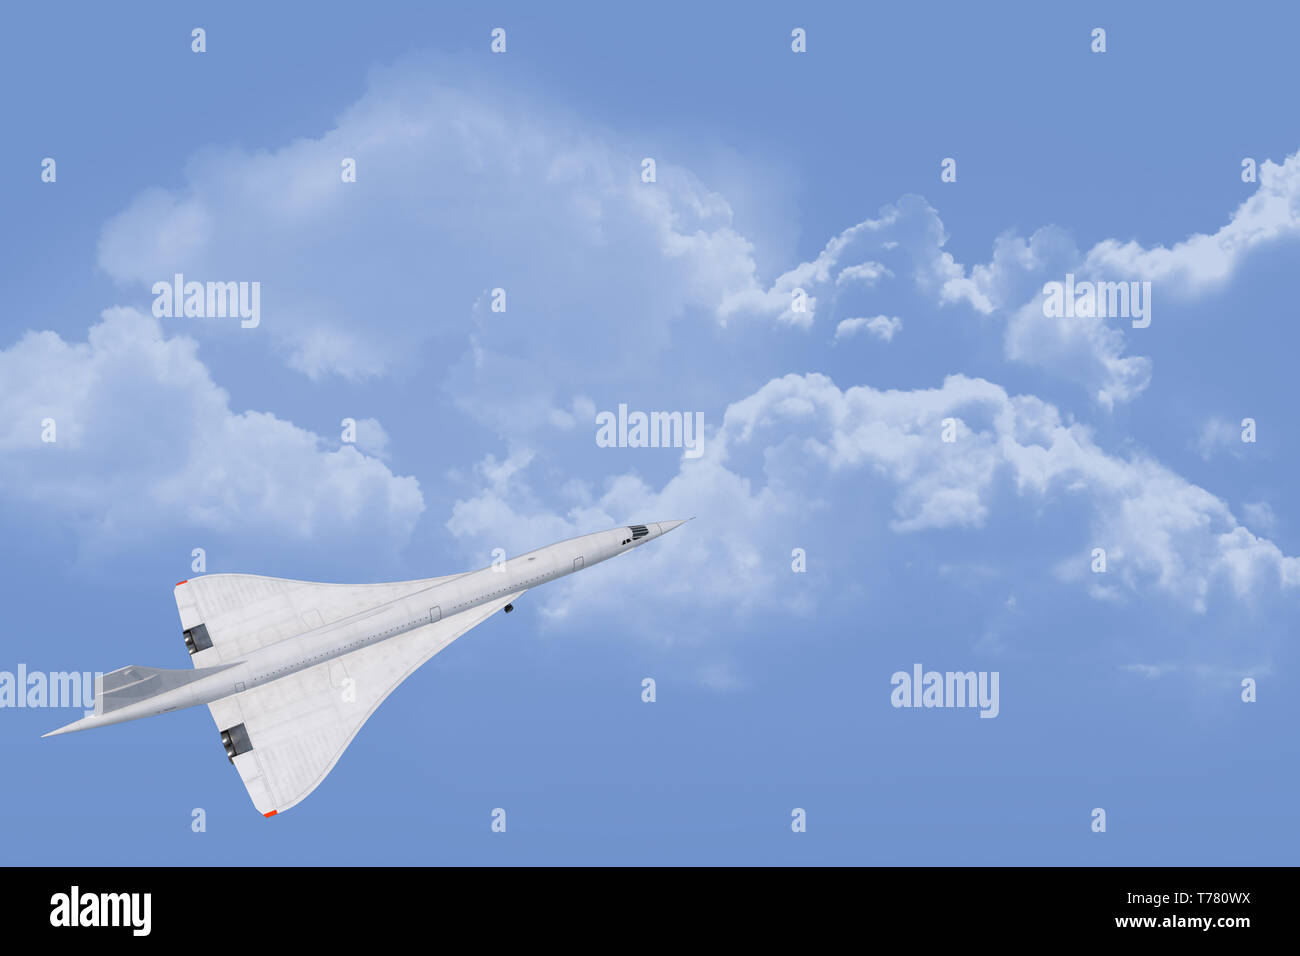 Iconica creazione inglese/francese dell'aeroplano supersonico Concorde. Design elegante e alla moda e due volte più veloce del normale jet sull'Atlantico. Foto Stock